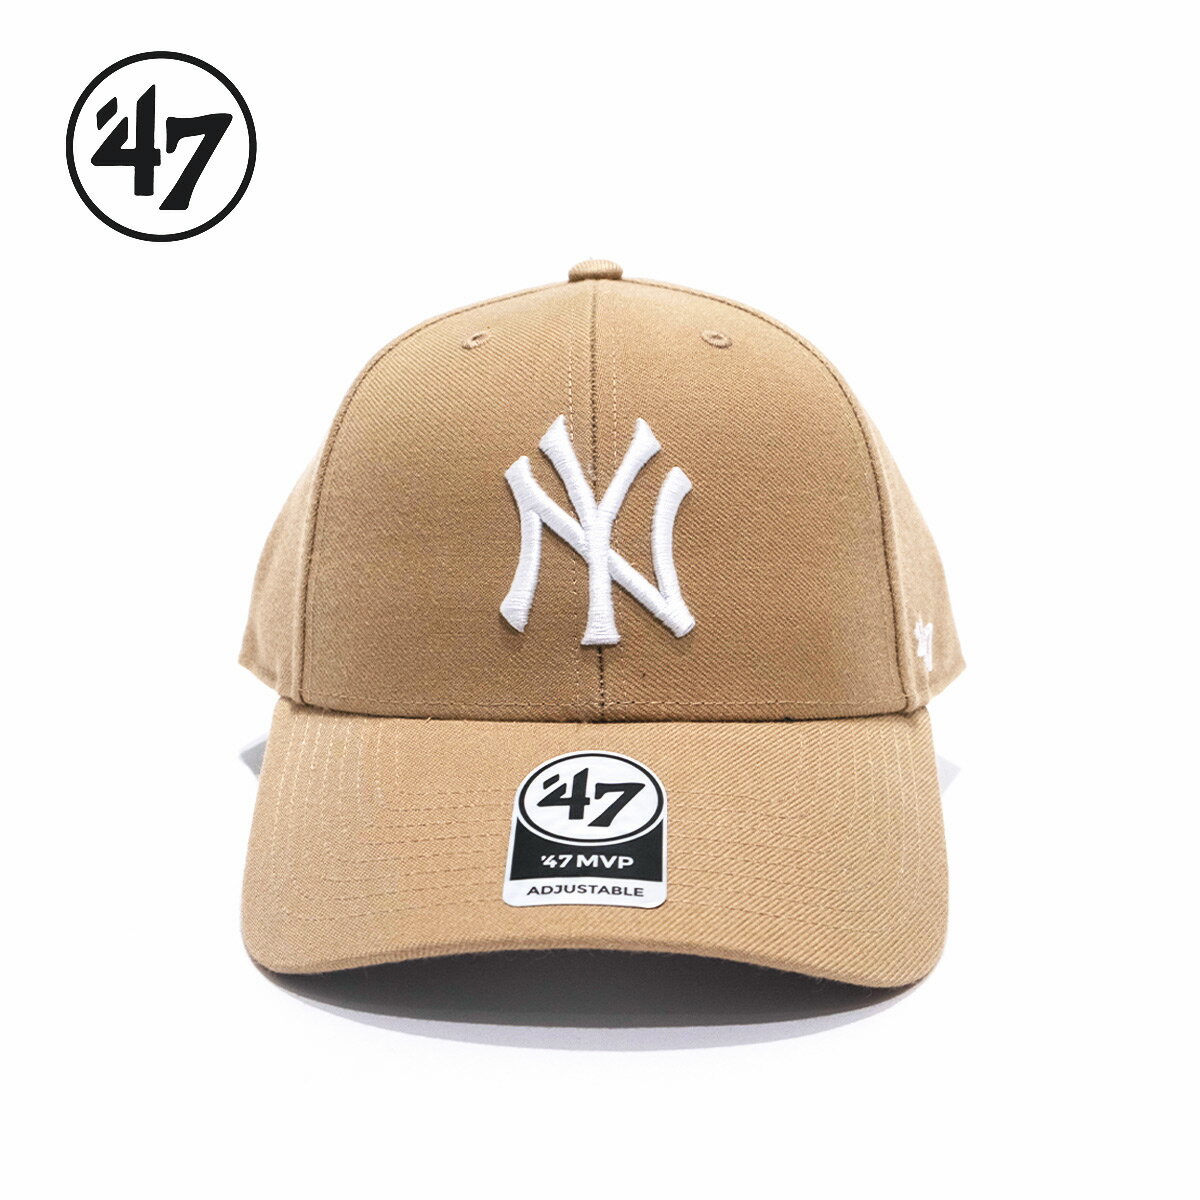 47 フォーティーセブン キャップ 帽子 ユニセックス 47BRAND ヤンキース Yankees MVP Khaki x White Logo ’47 調節可能 ベージュ チーム ニューヨーク 野球帽 刺繍 マジックテープ エムブイピー MVP17WBV メジャーリーグ アメリカ 正規品